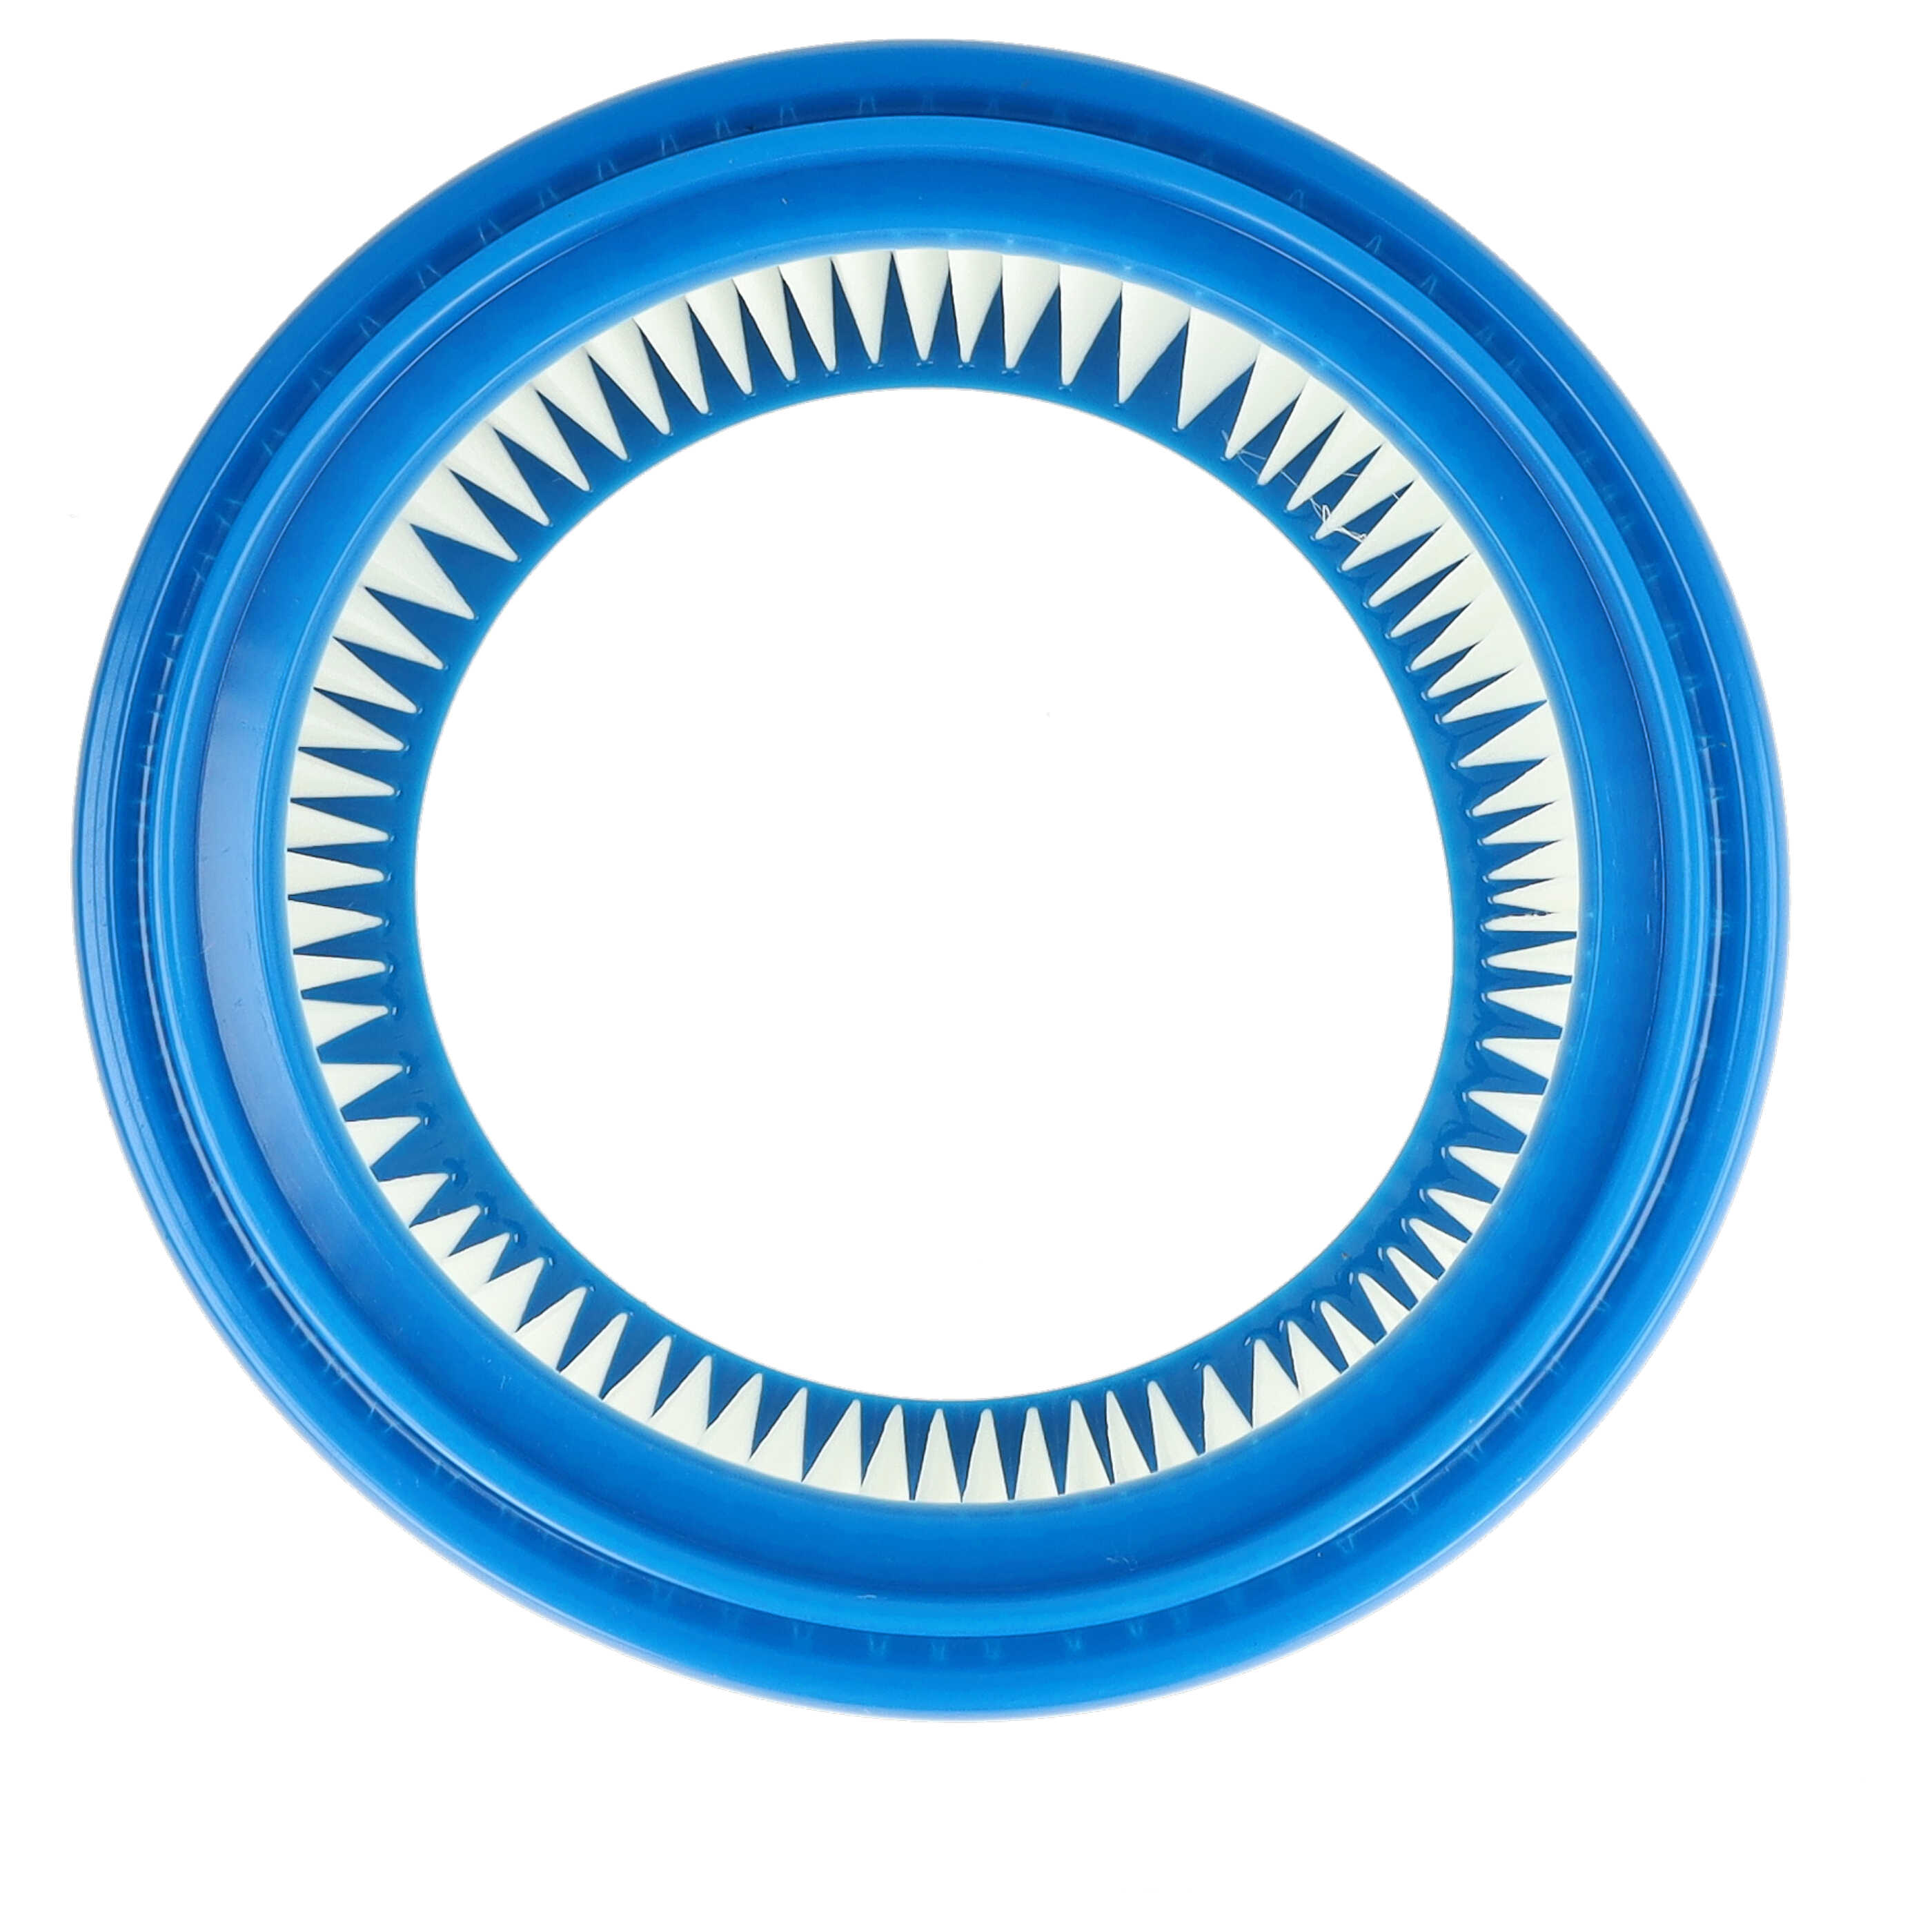 2x Filtr do odkurzacza Bosch zamiennik Bosch 2607432024 - filtr okrągły, biały / niebieski